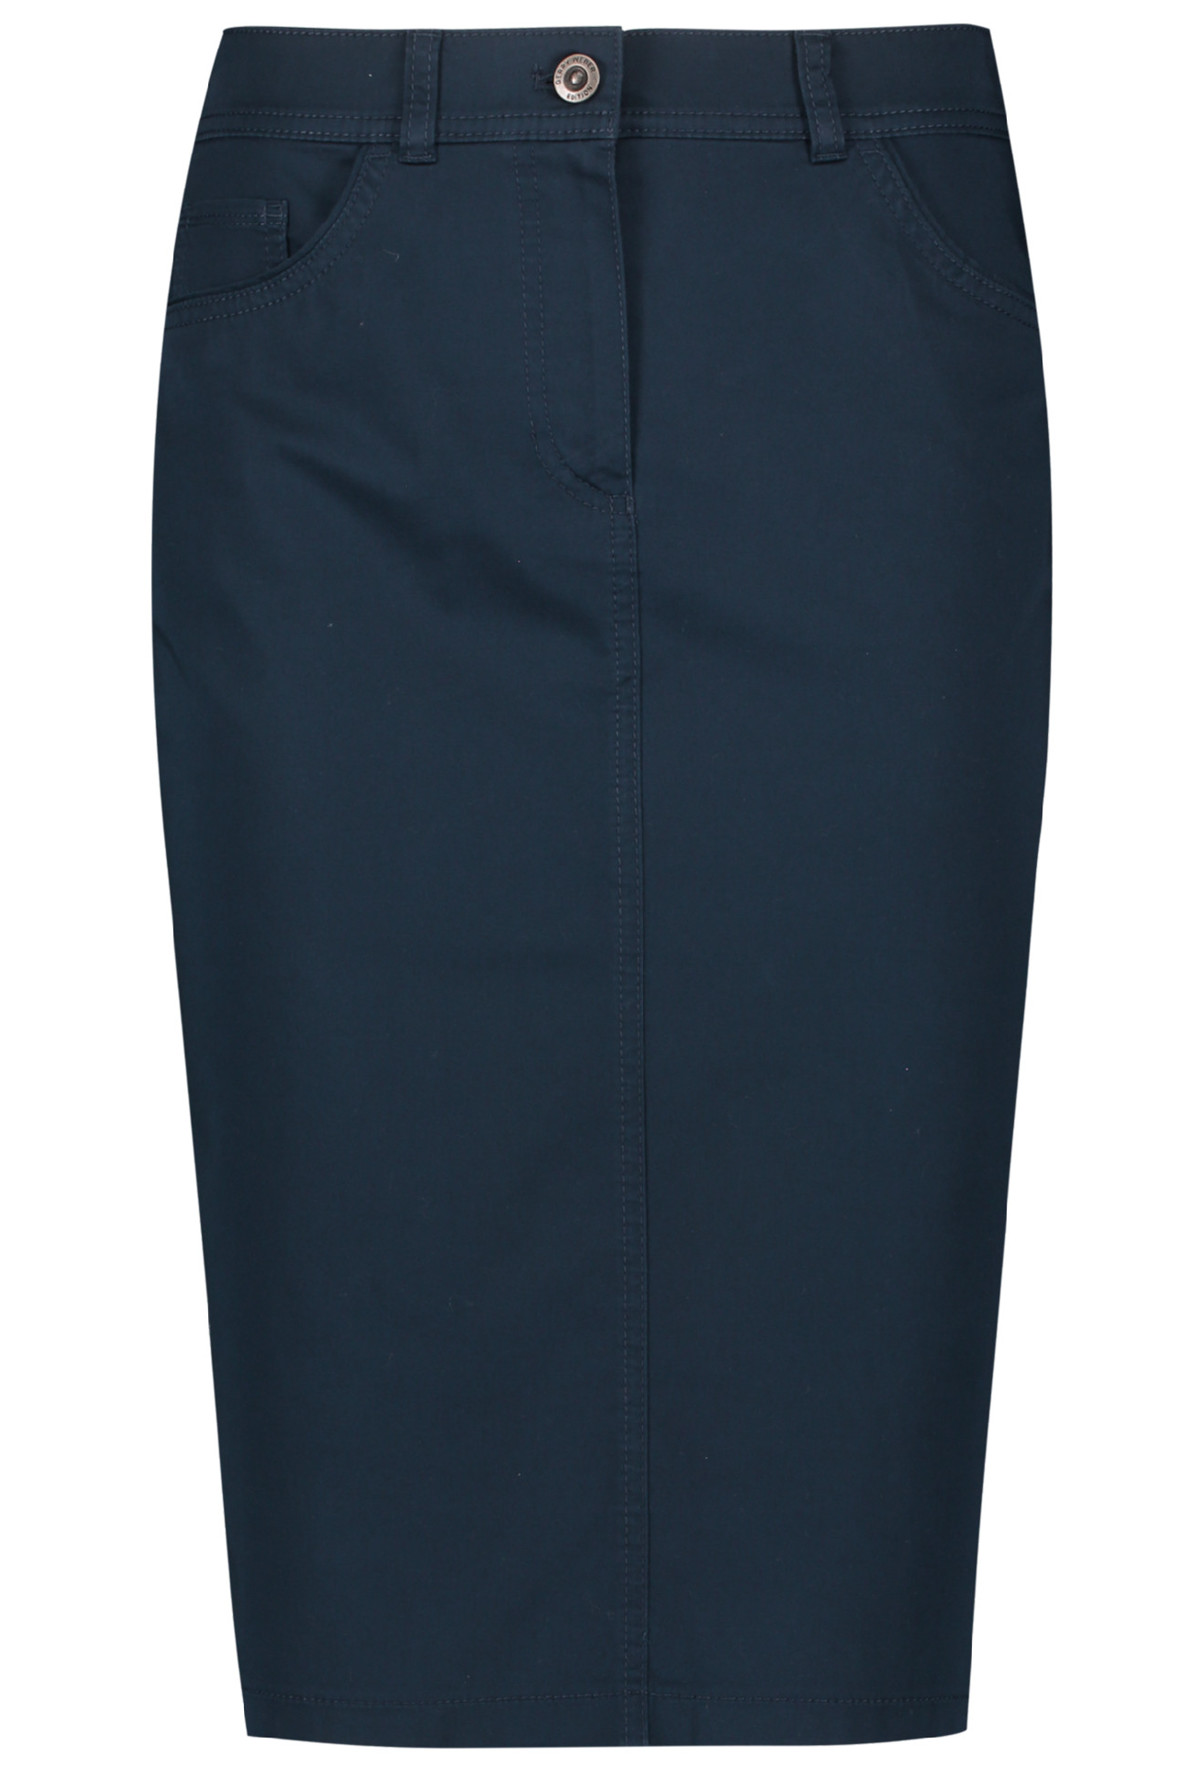 Watt forræder stykke Gerry Weber sommer nederdel med stræk - flere farver - mørkeblå - Hos Lohse